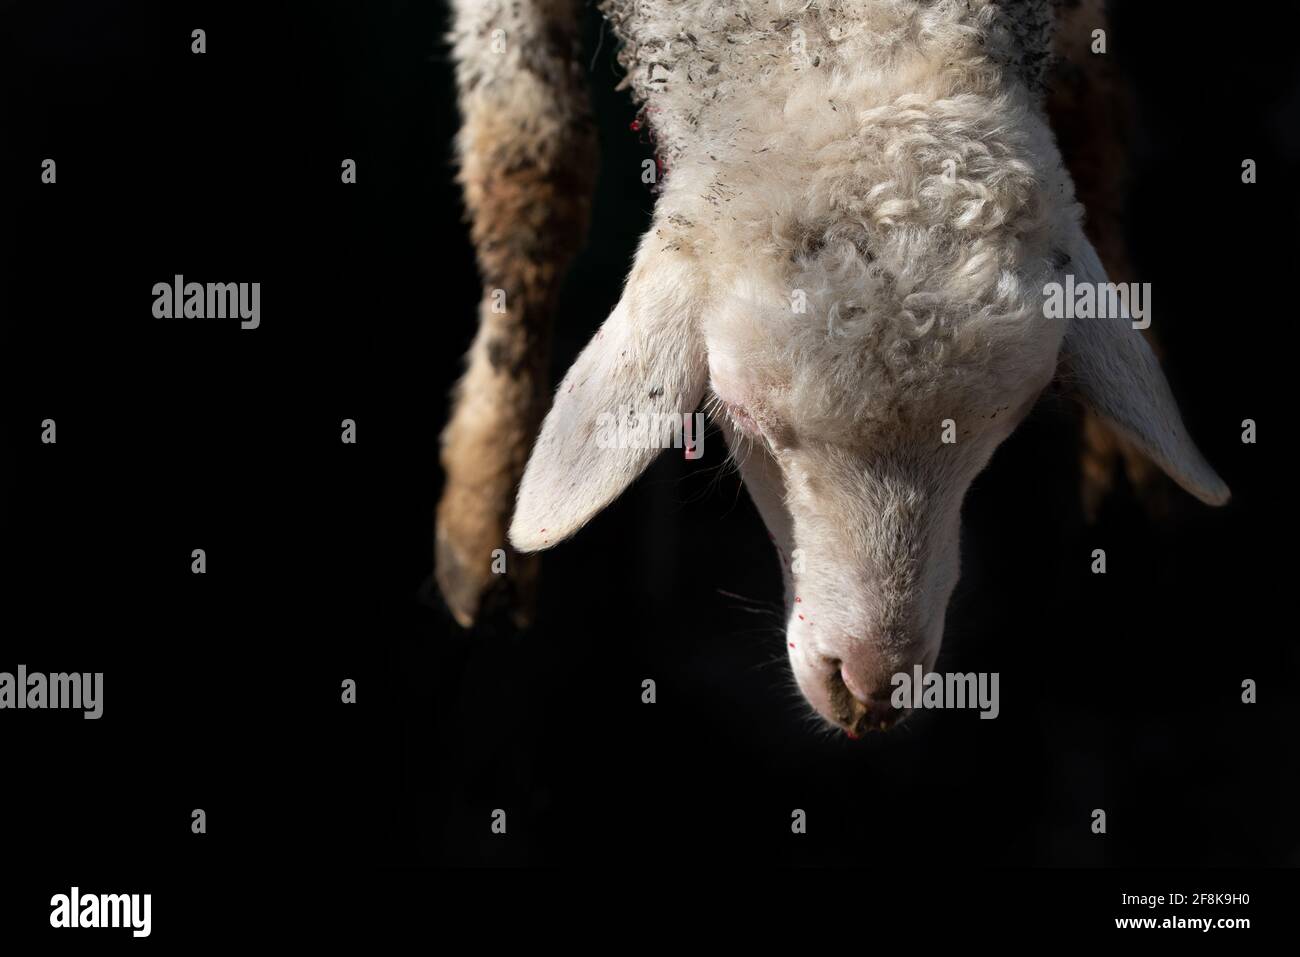 Nahaufnahme und Detail eines Lammes, das traditionell geschlachtet wird. Kopf und Vorderfüße hängen vor einem dunklen Hintergrund. Stockfoto